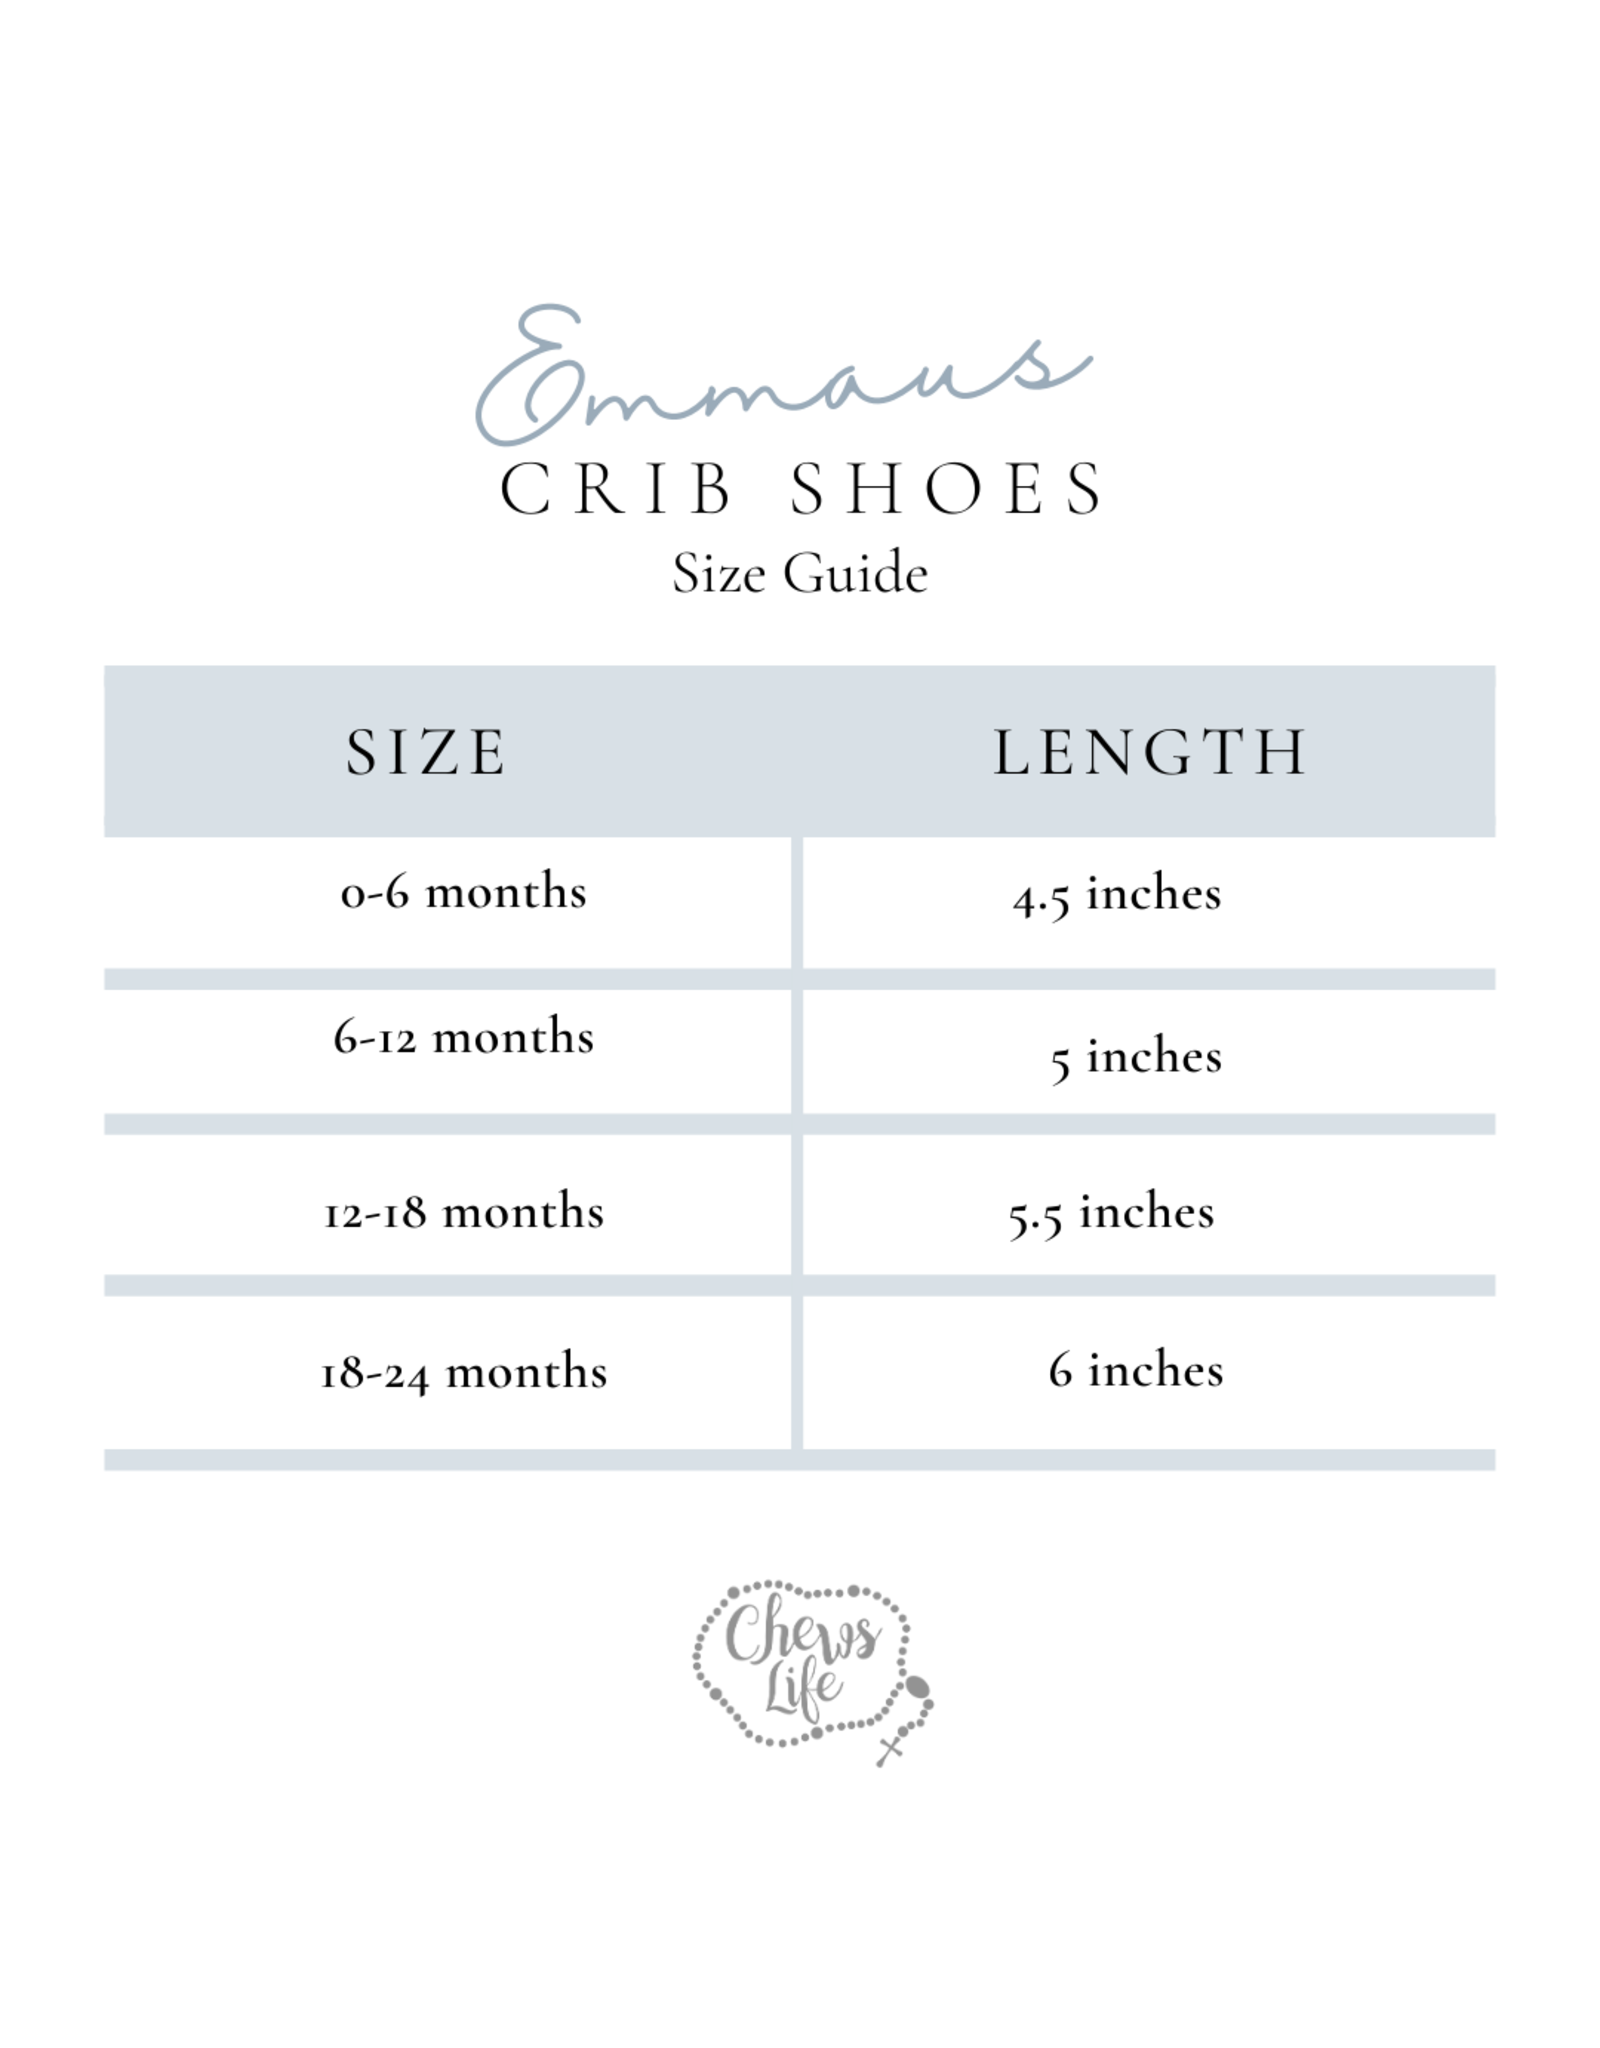 Emmaus Crib Shoes - Yellow Chi Rho